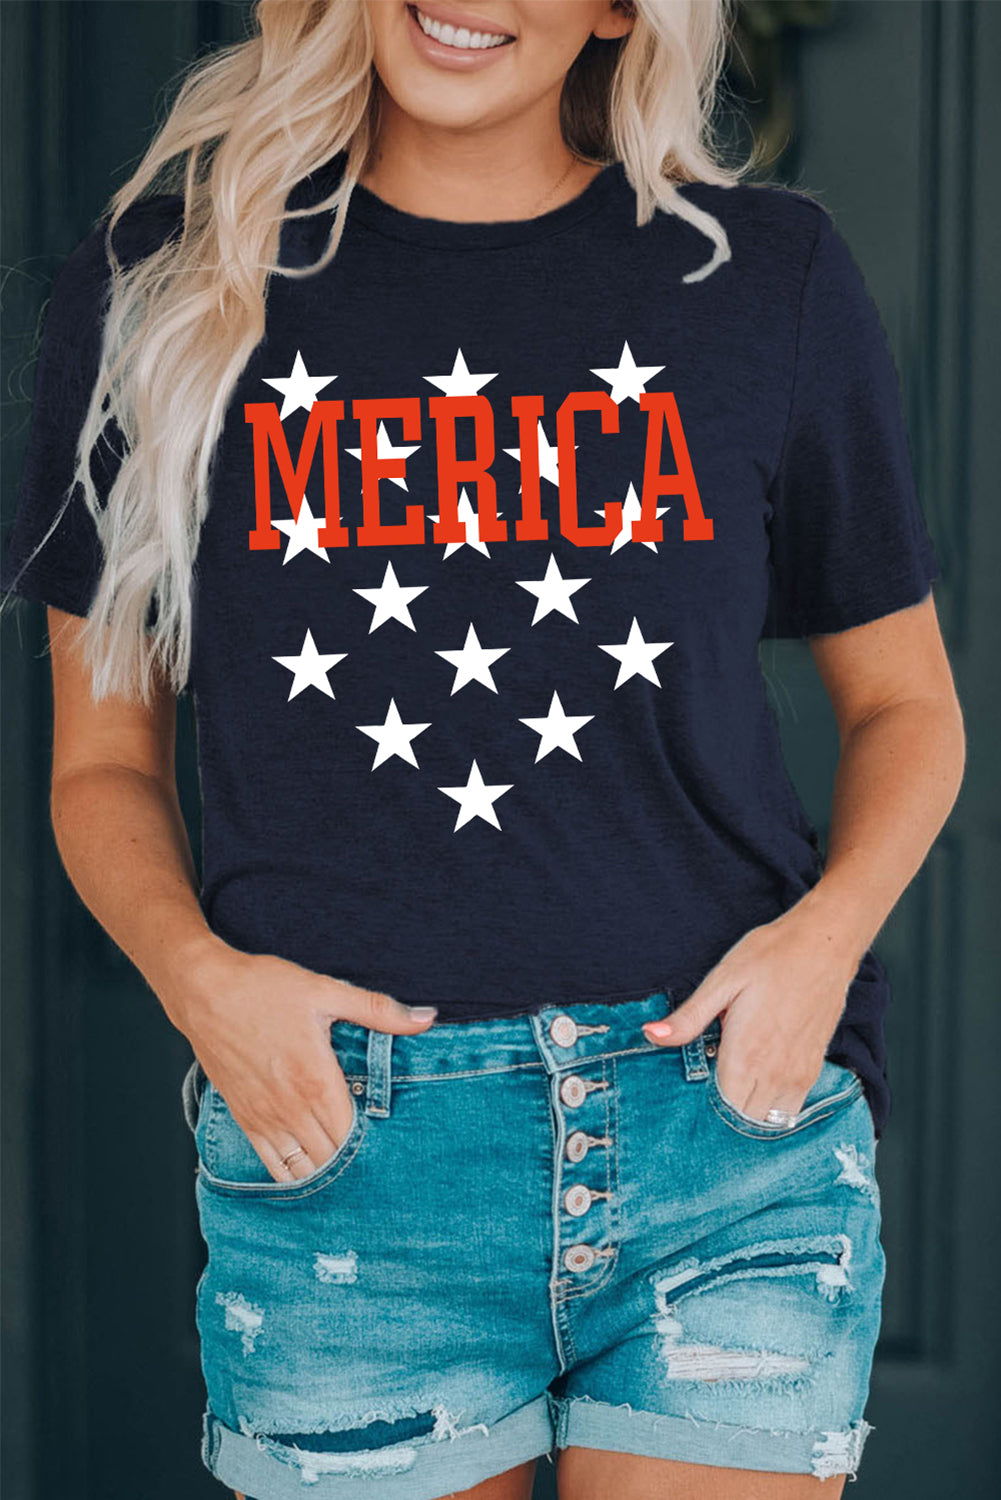 MERICA Graphic Star America Short-Sleeve Tee Shirt